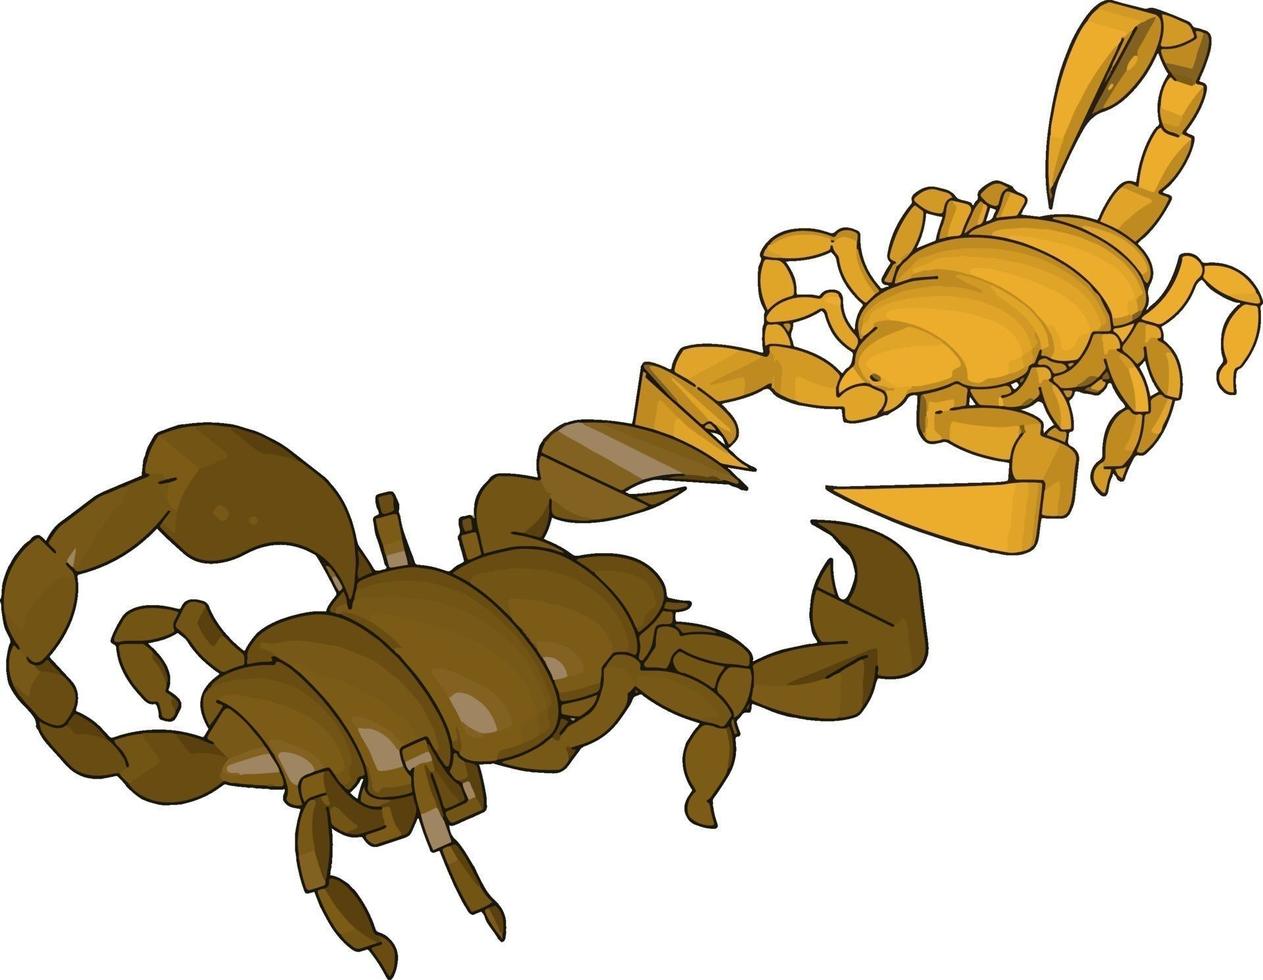 modo de um escorpião 3d, ilustração, vetor em fundo branco.